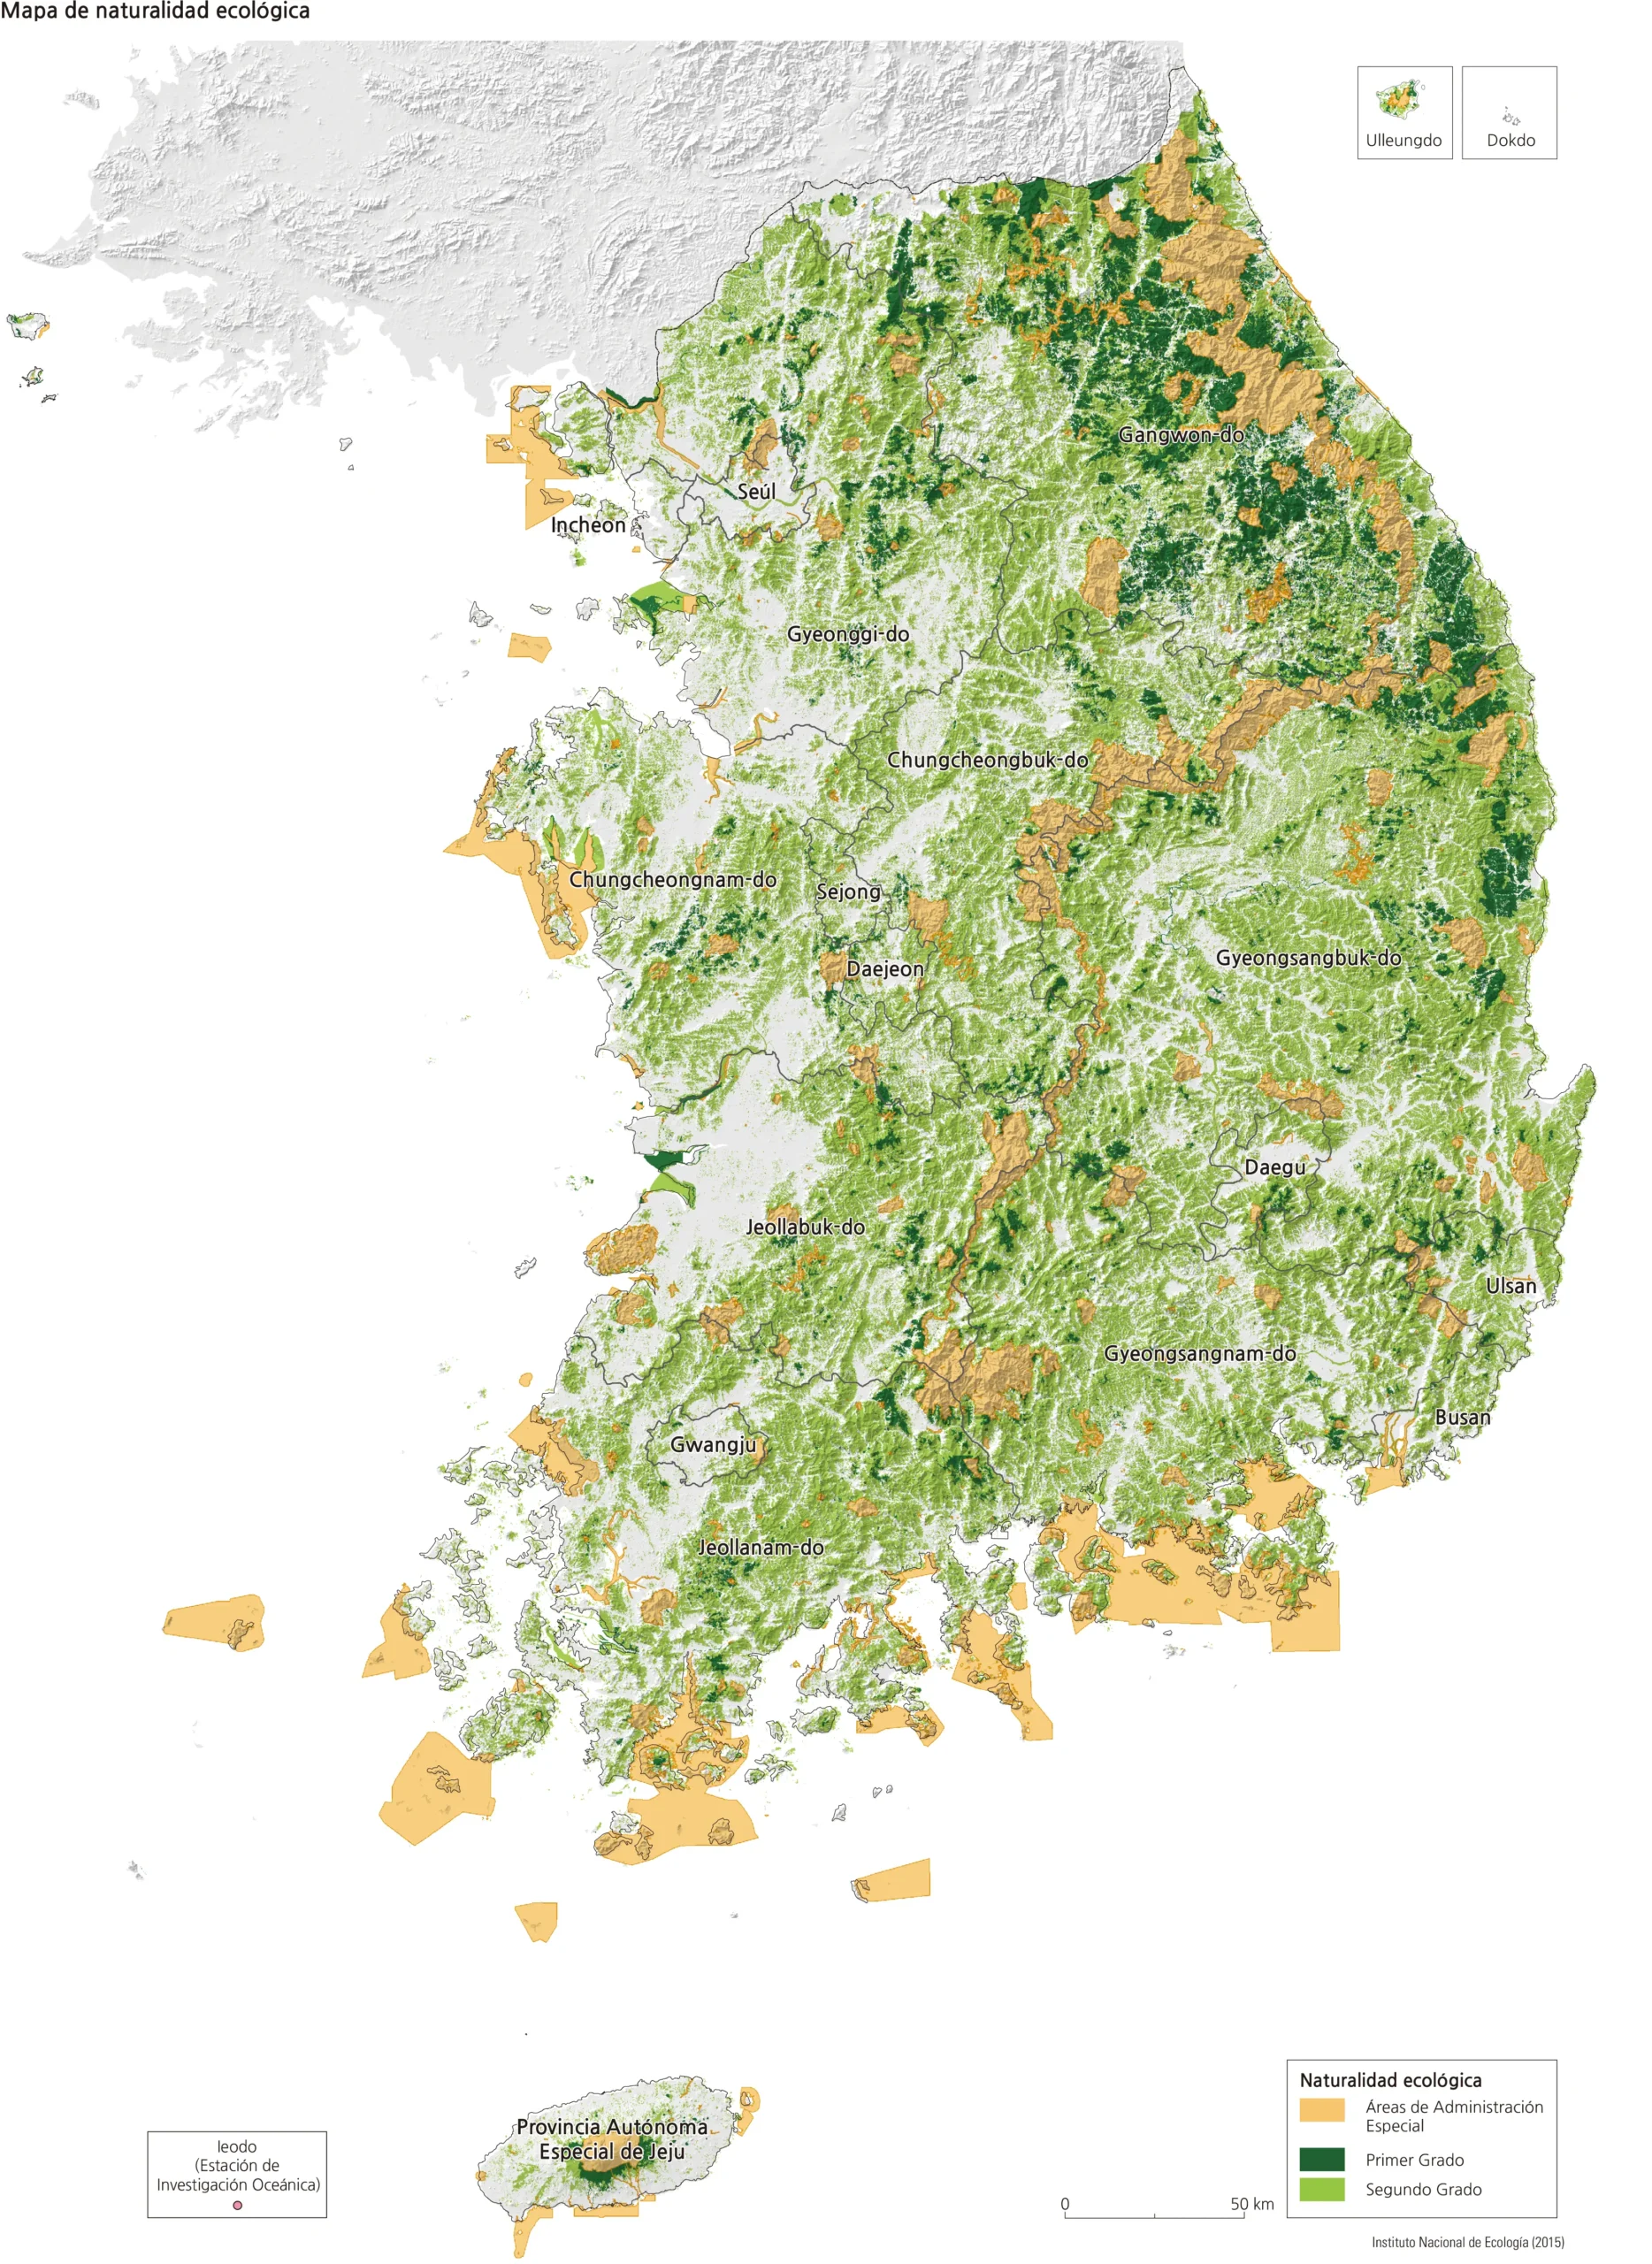 corea del sur flora y fauna - Qué tipo de bioma tiene Corea del Sur